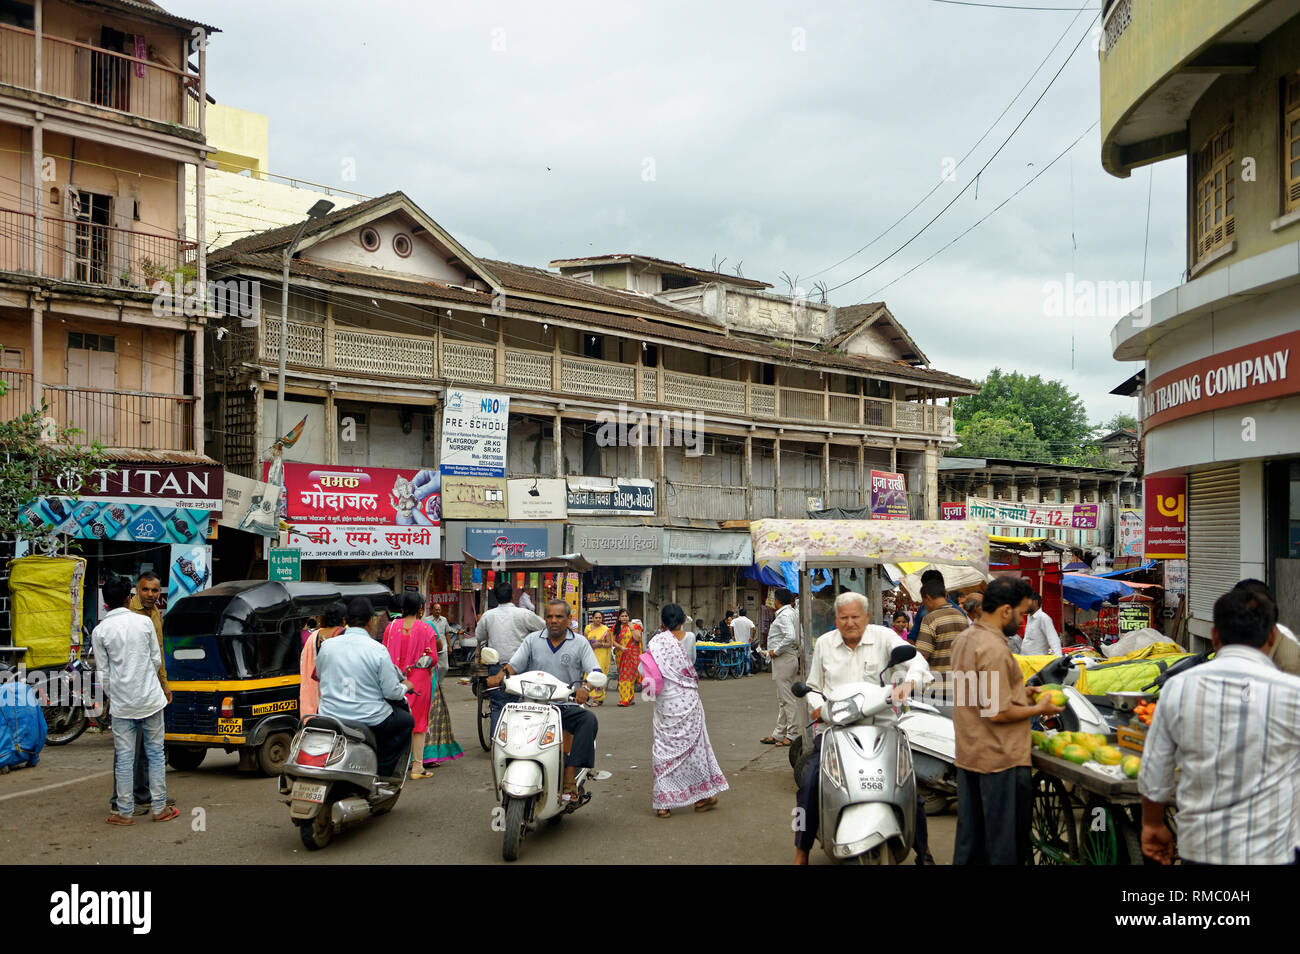 Old building on market road, nashik, Maharashtra, India, Asia Stock Photo